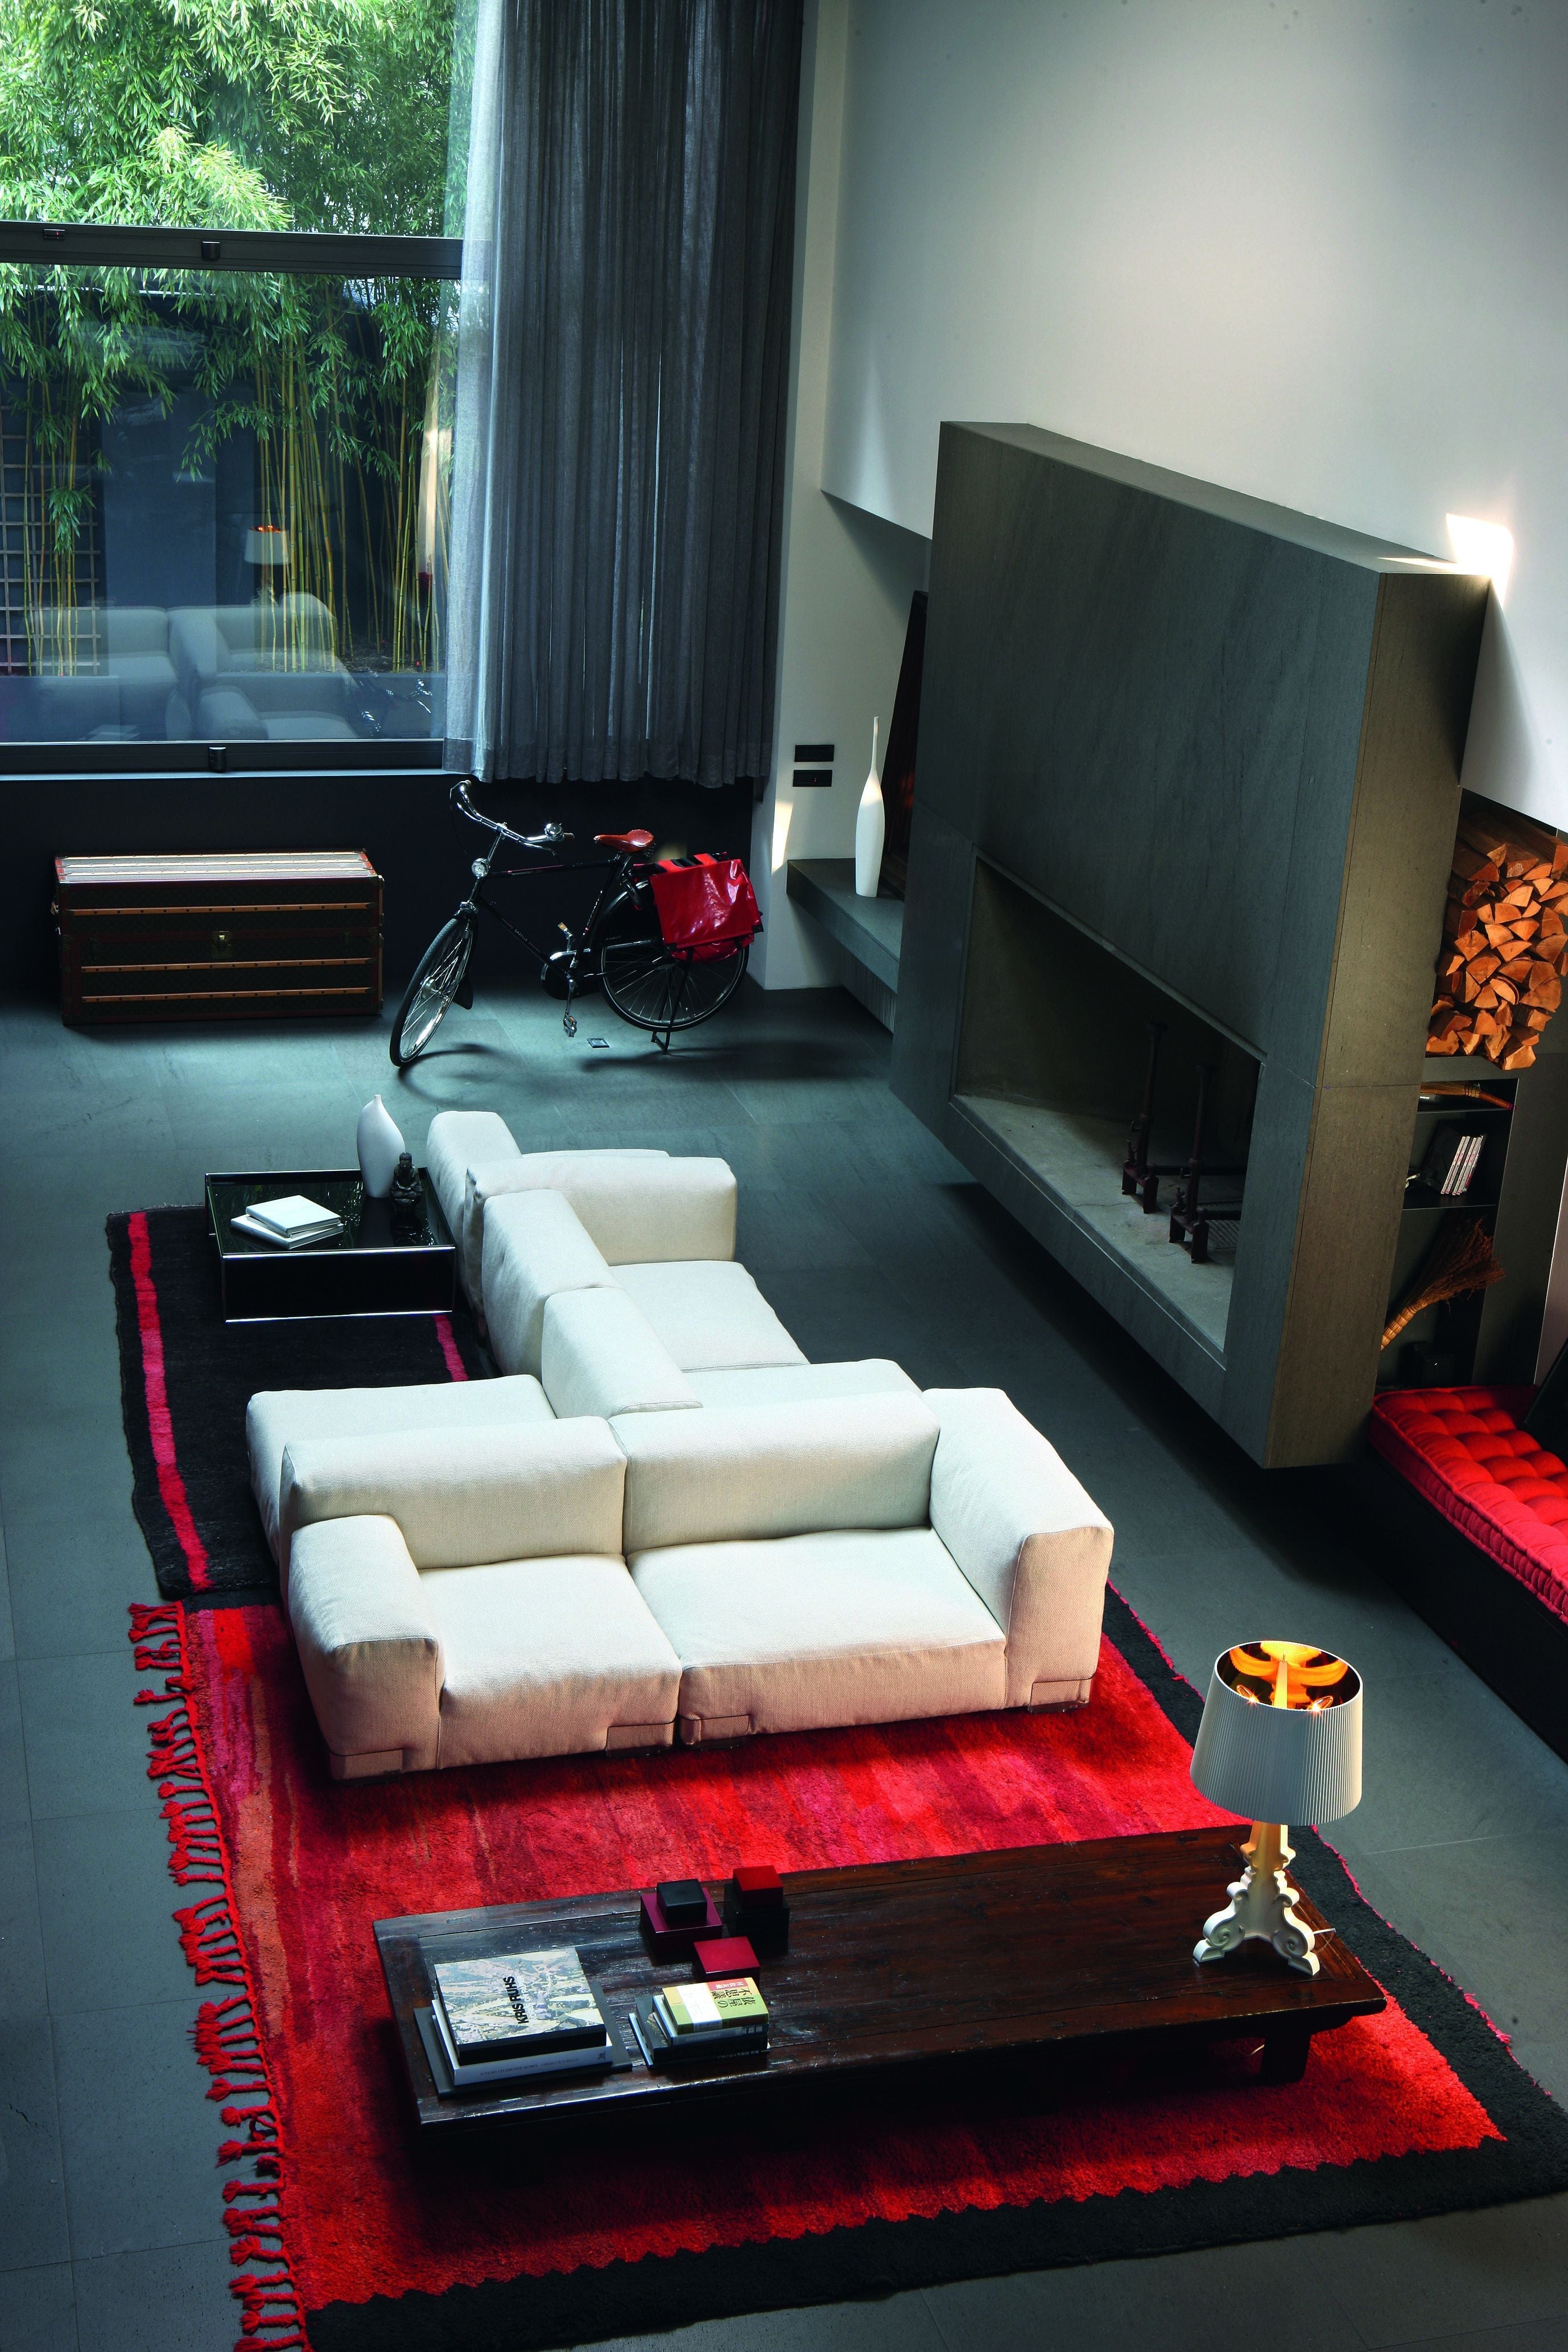 Kartell Plastics Duo 2 Sitzer Sofa DX XL Baumwolle, Taupe